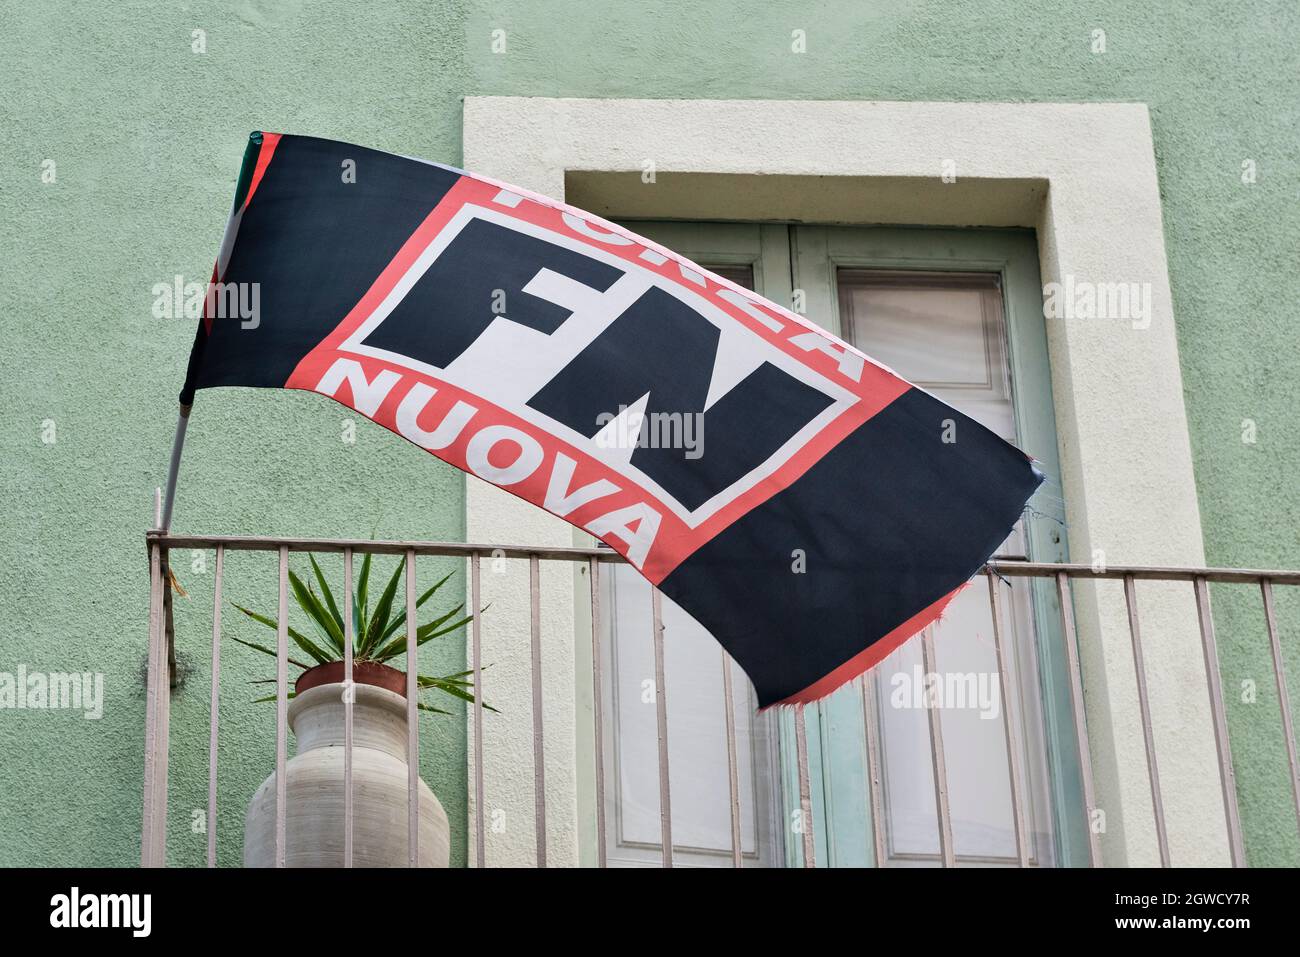 Die schwarze Flagge der Forza Nuova, einer neofaschistischen italienischen politischen Partei, in den lokalen Parteibüros in Bronte, Sizilien, Italien Stockfoto